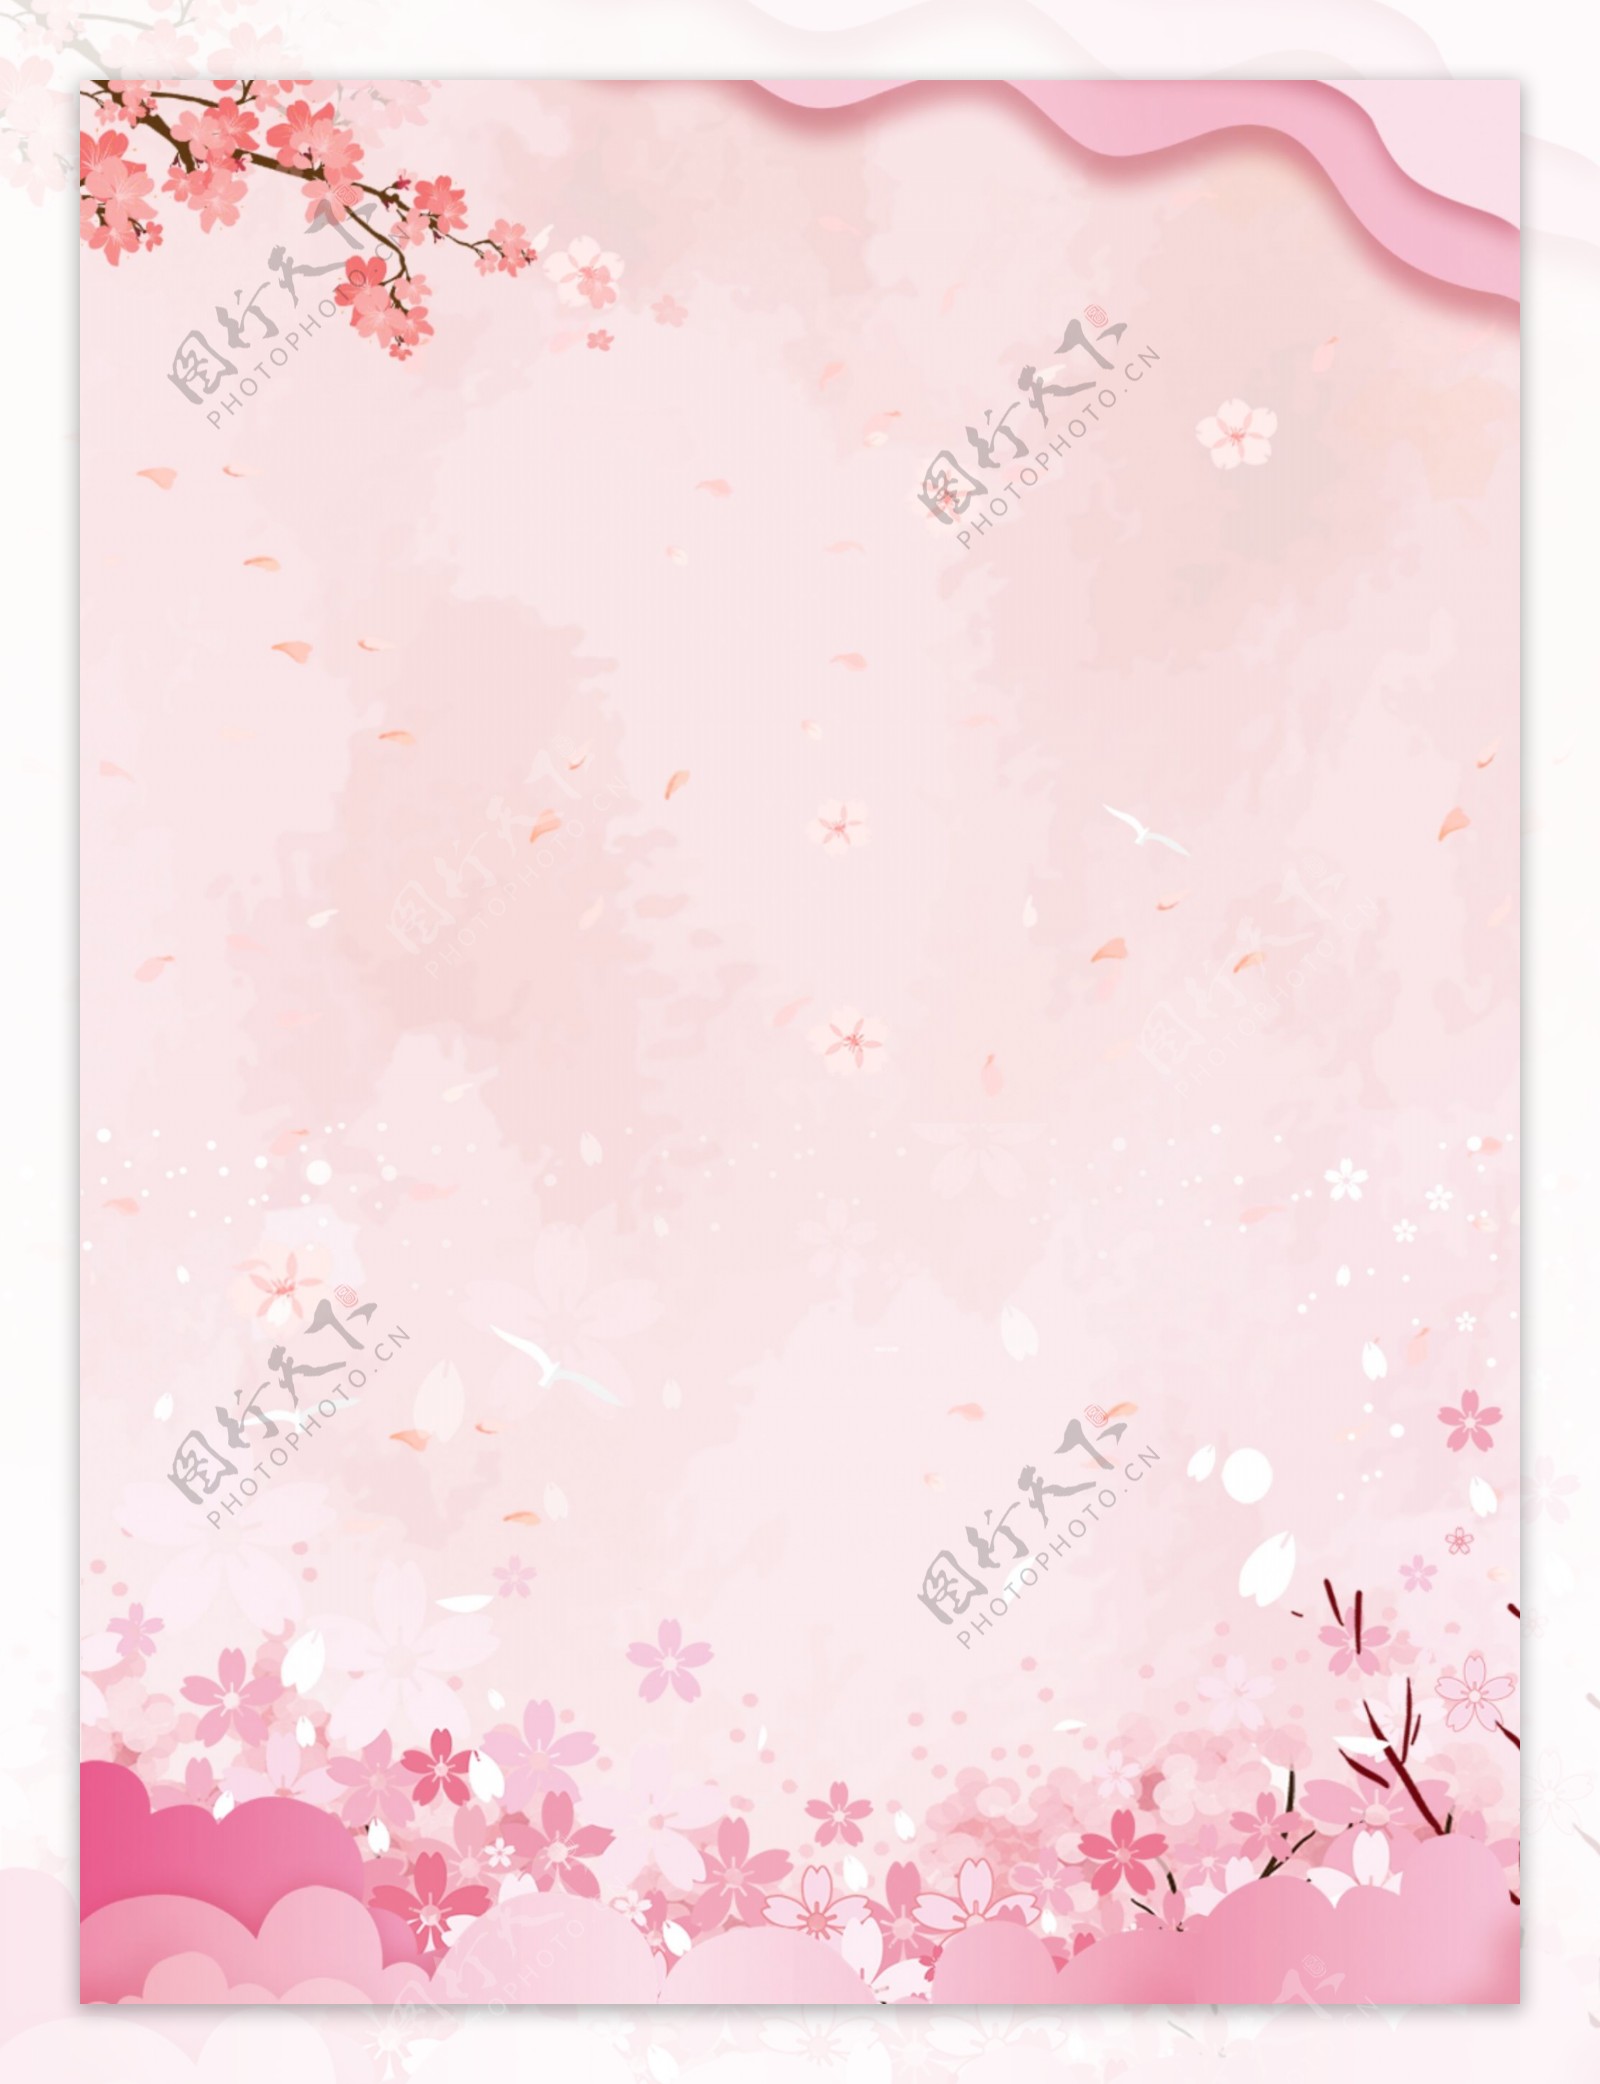 粉色樱花唯美浪漫剪影广告背景